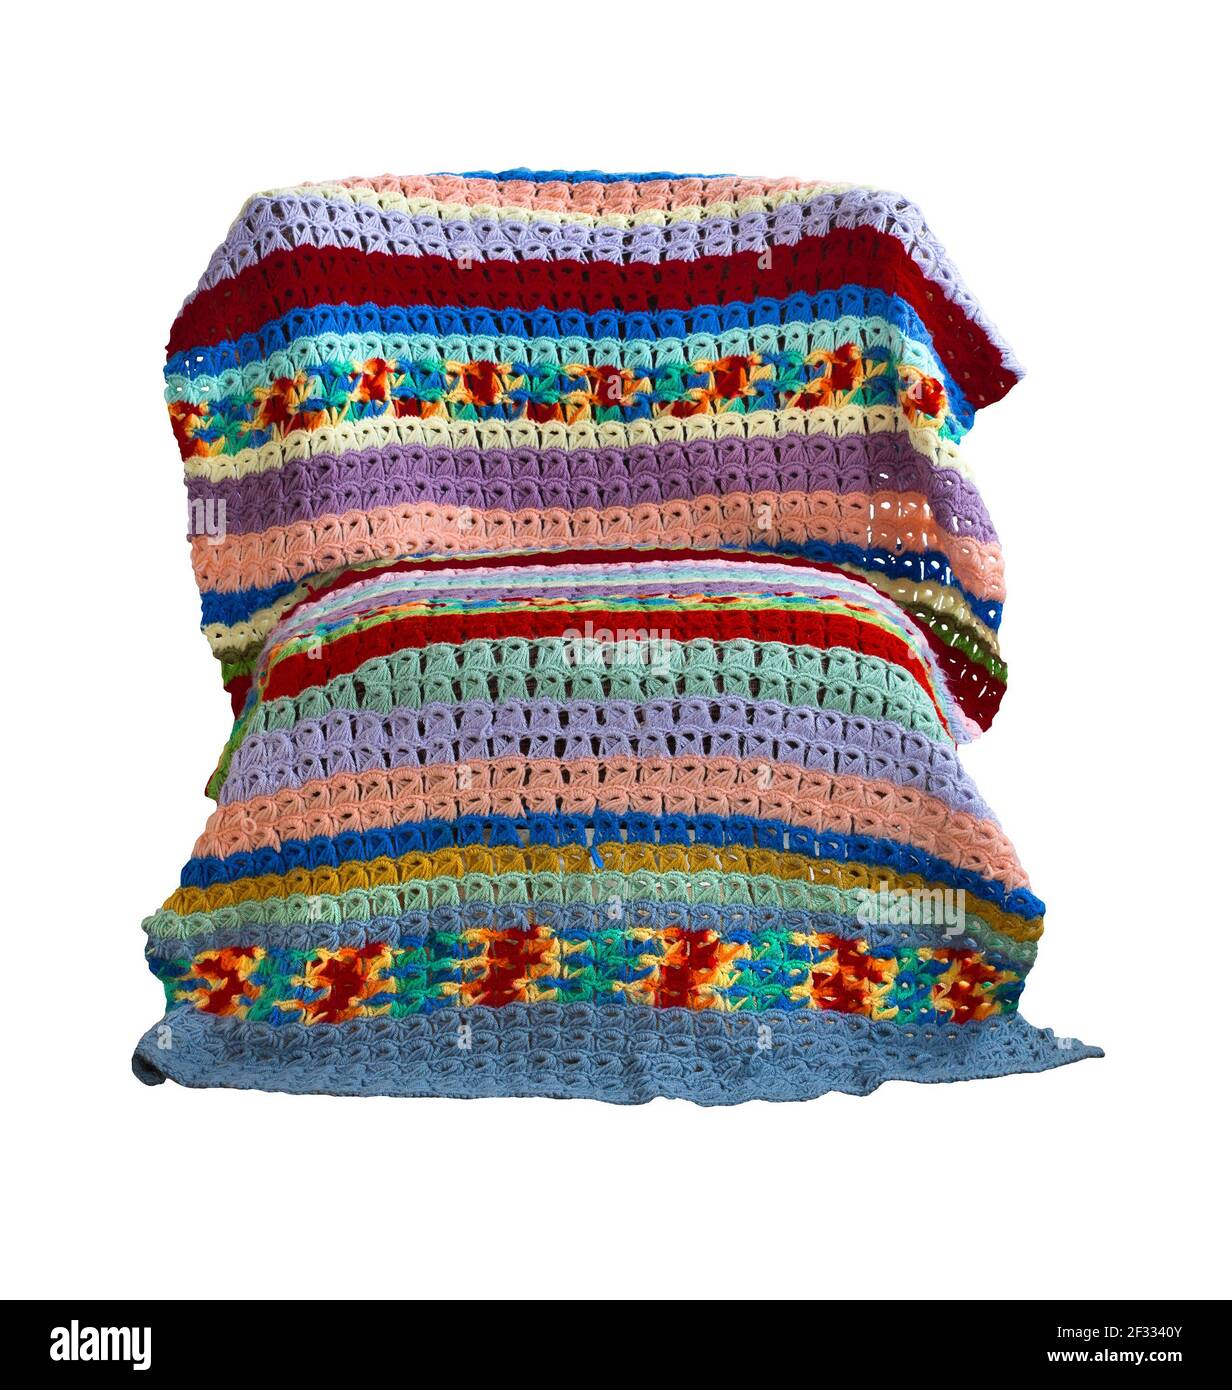 Una coperta a crochet vintage colorata in pizzo con punto a scopino drappeggiato su una sedia creata dall'artista tessile americano Margaret Braaten (1914-2004). Foto Stock